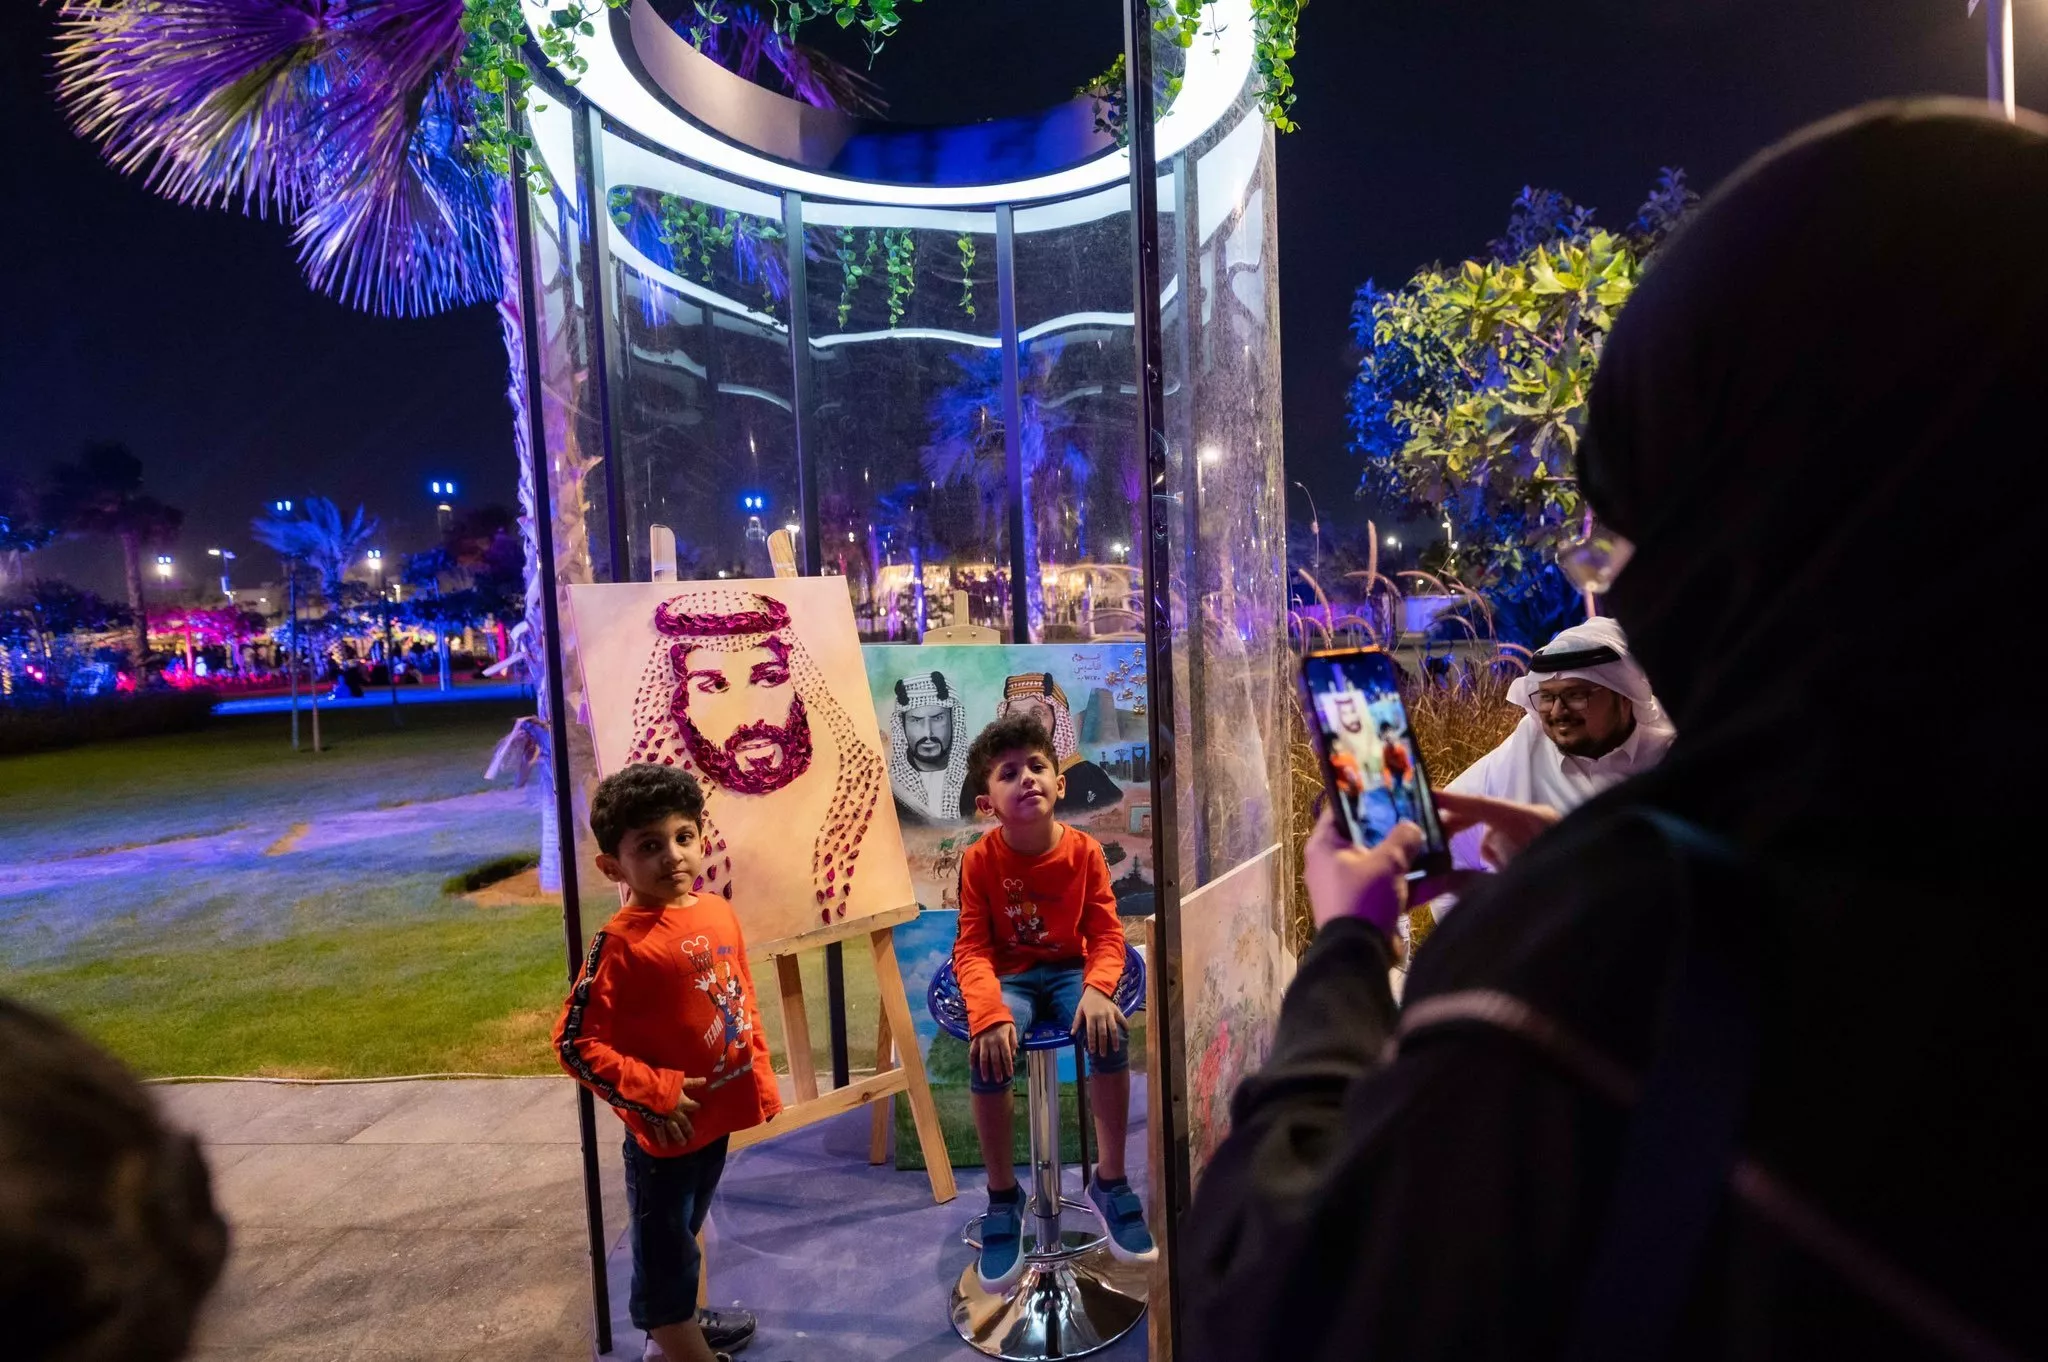 افتتاح حديقة الأمير ماجد بأنشطة ترفيهية متنوّعة ضمن فعاليات موسم جدة 2022